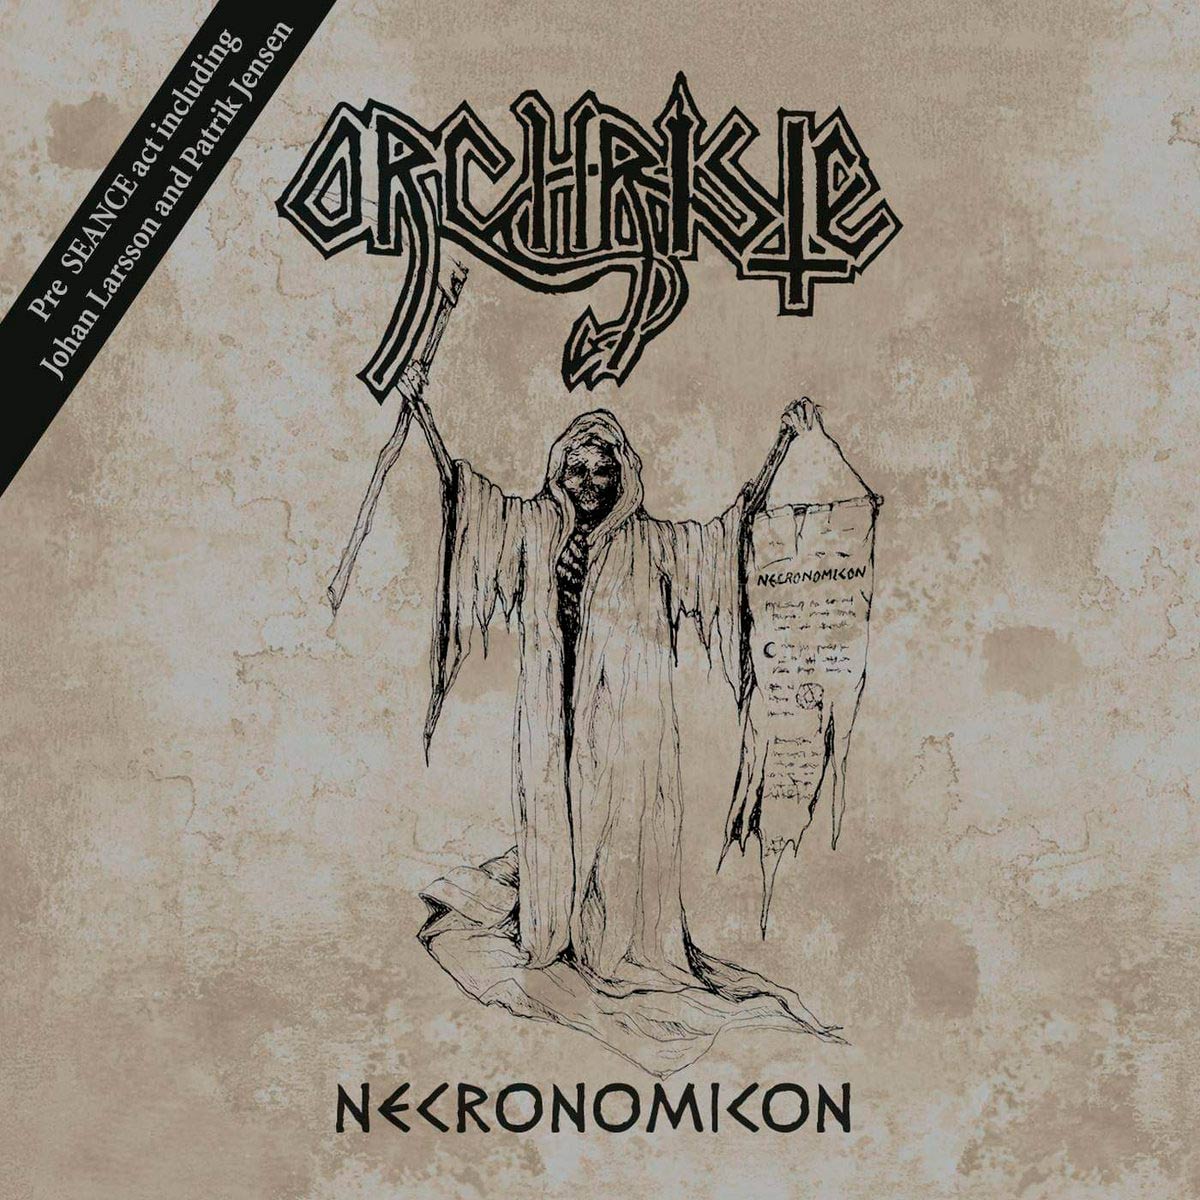 ORCHRISTE (pre-SEANCE) / Necronomicon (1989) (2021 reissue)